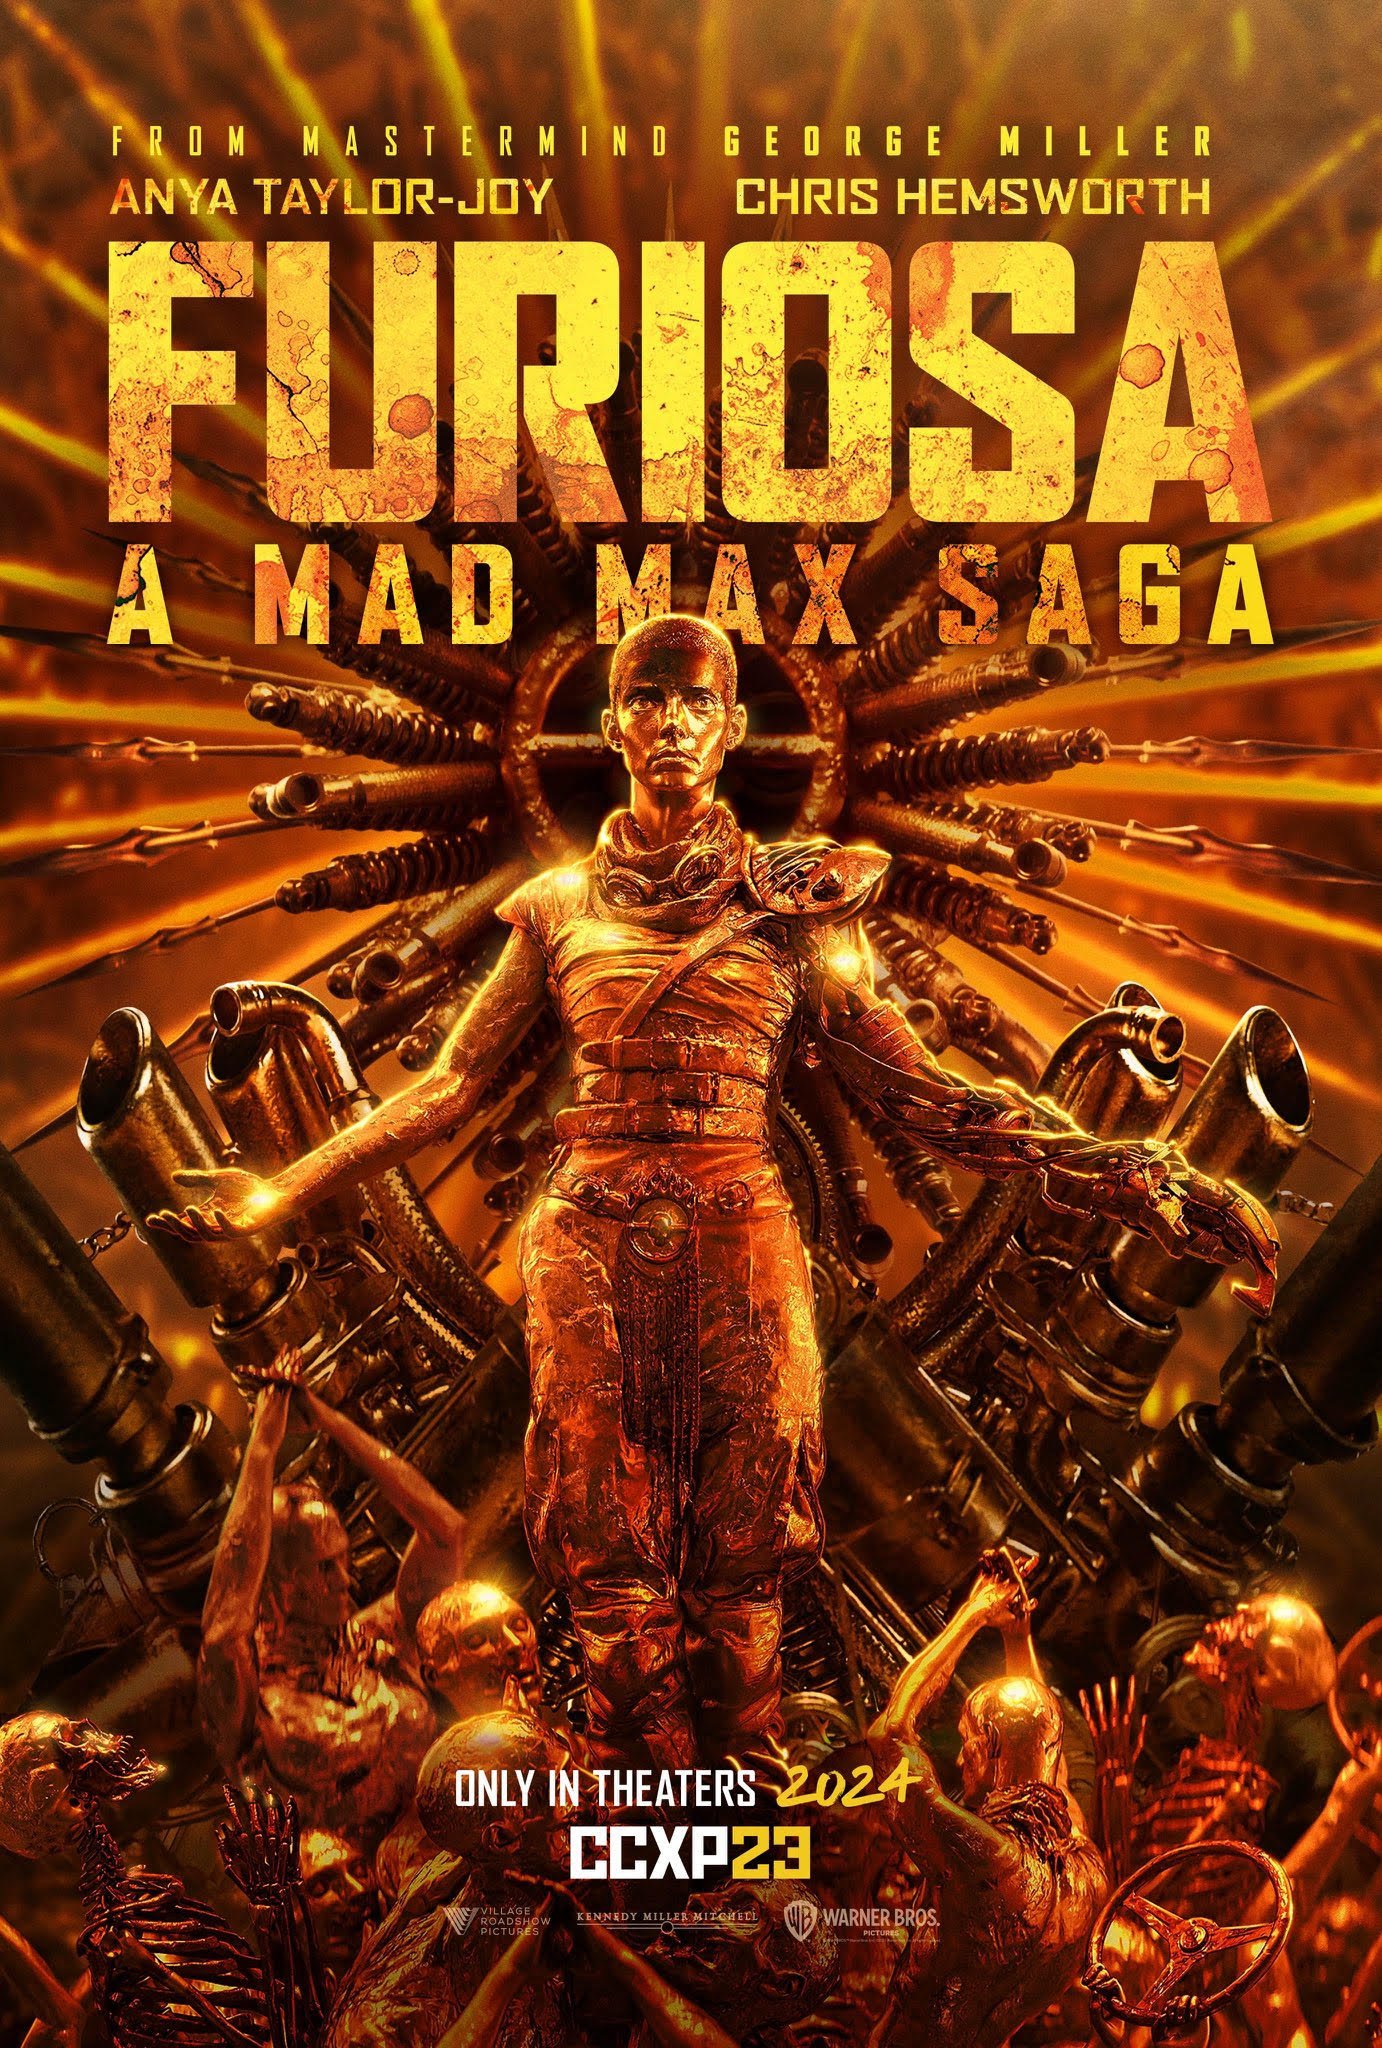 Mad Max Furiosa Billelis.jpg